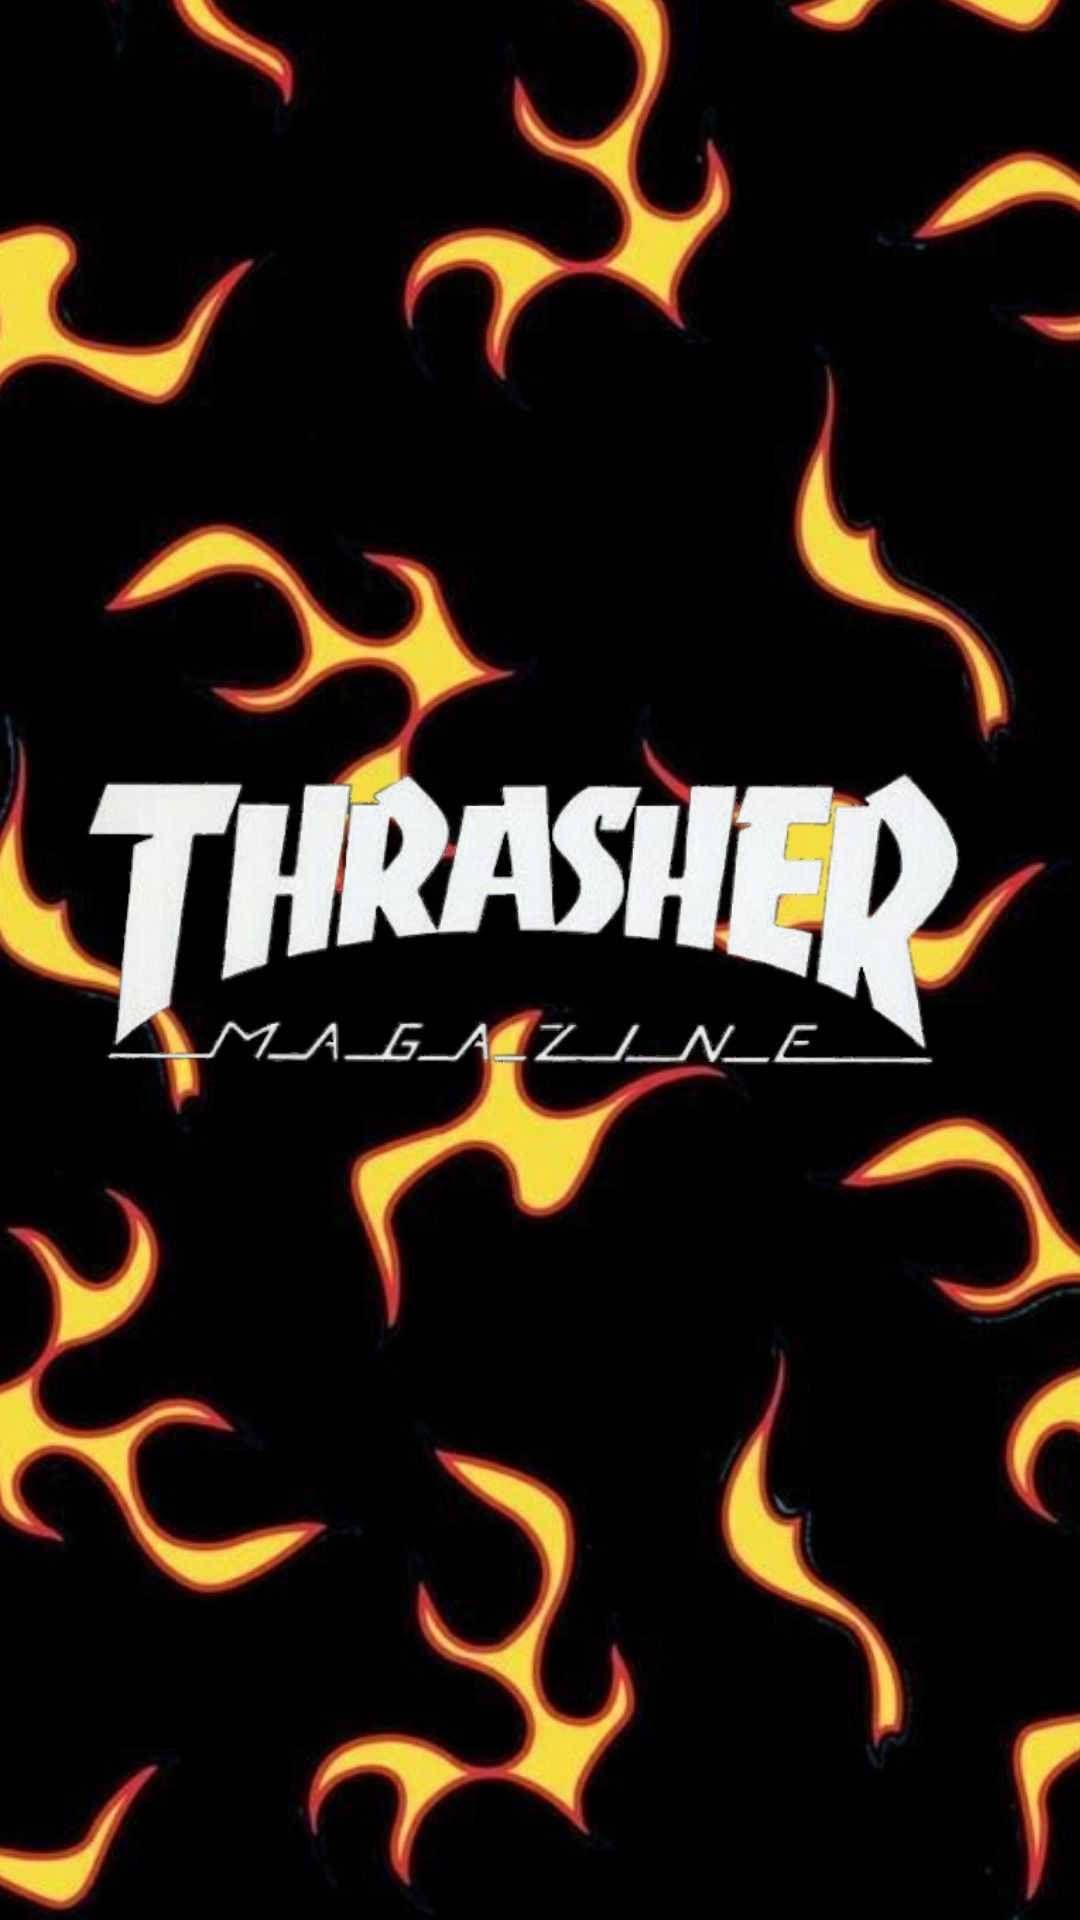 The thrasher magazine logo - Fire, Thrasher